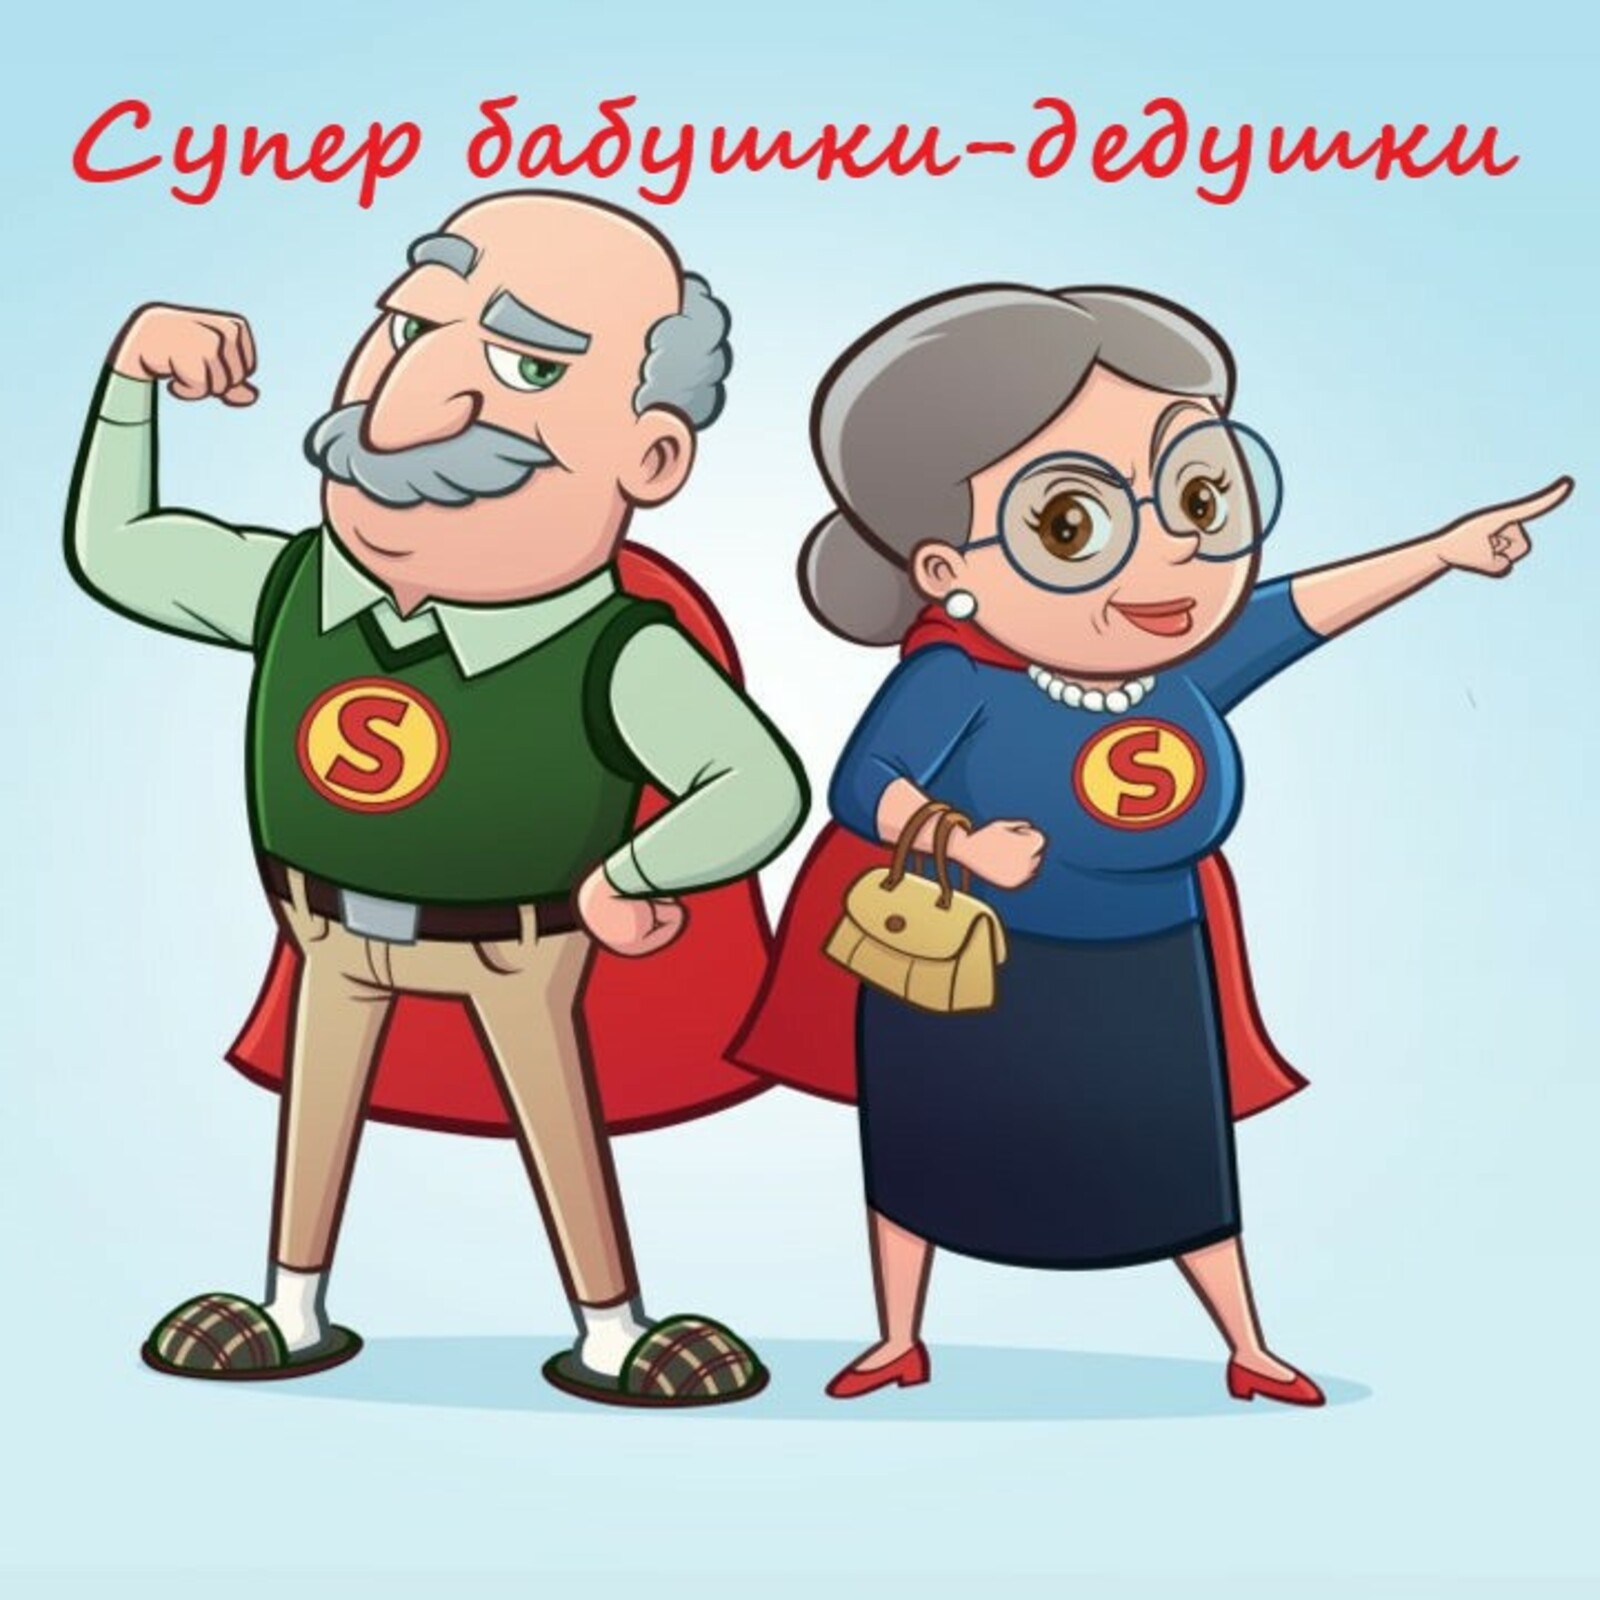 Кигинский информационный центр объявляет фотоконкурс «Супер бабушки - дедушки», приуроченный к международному Дню пожилых людей